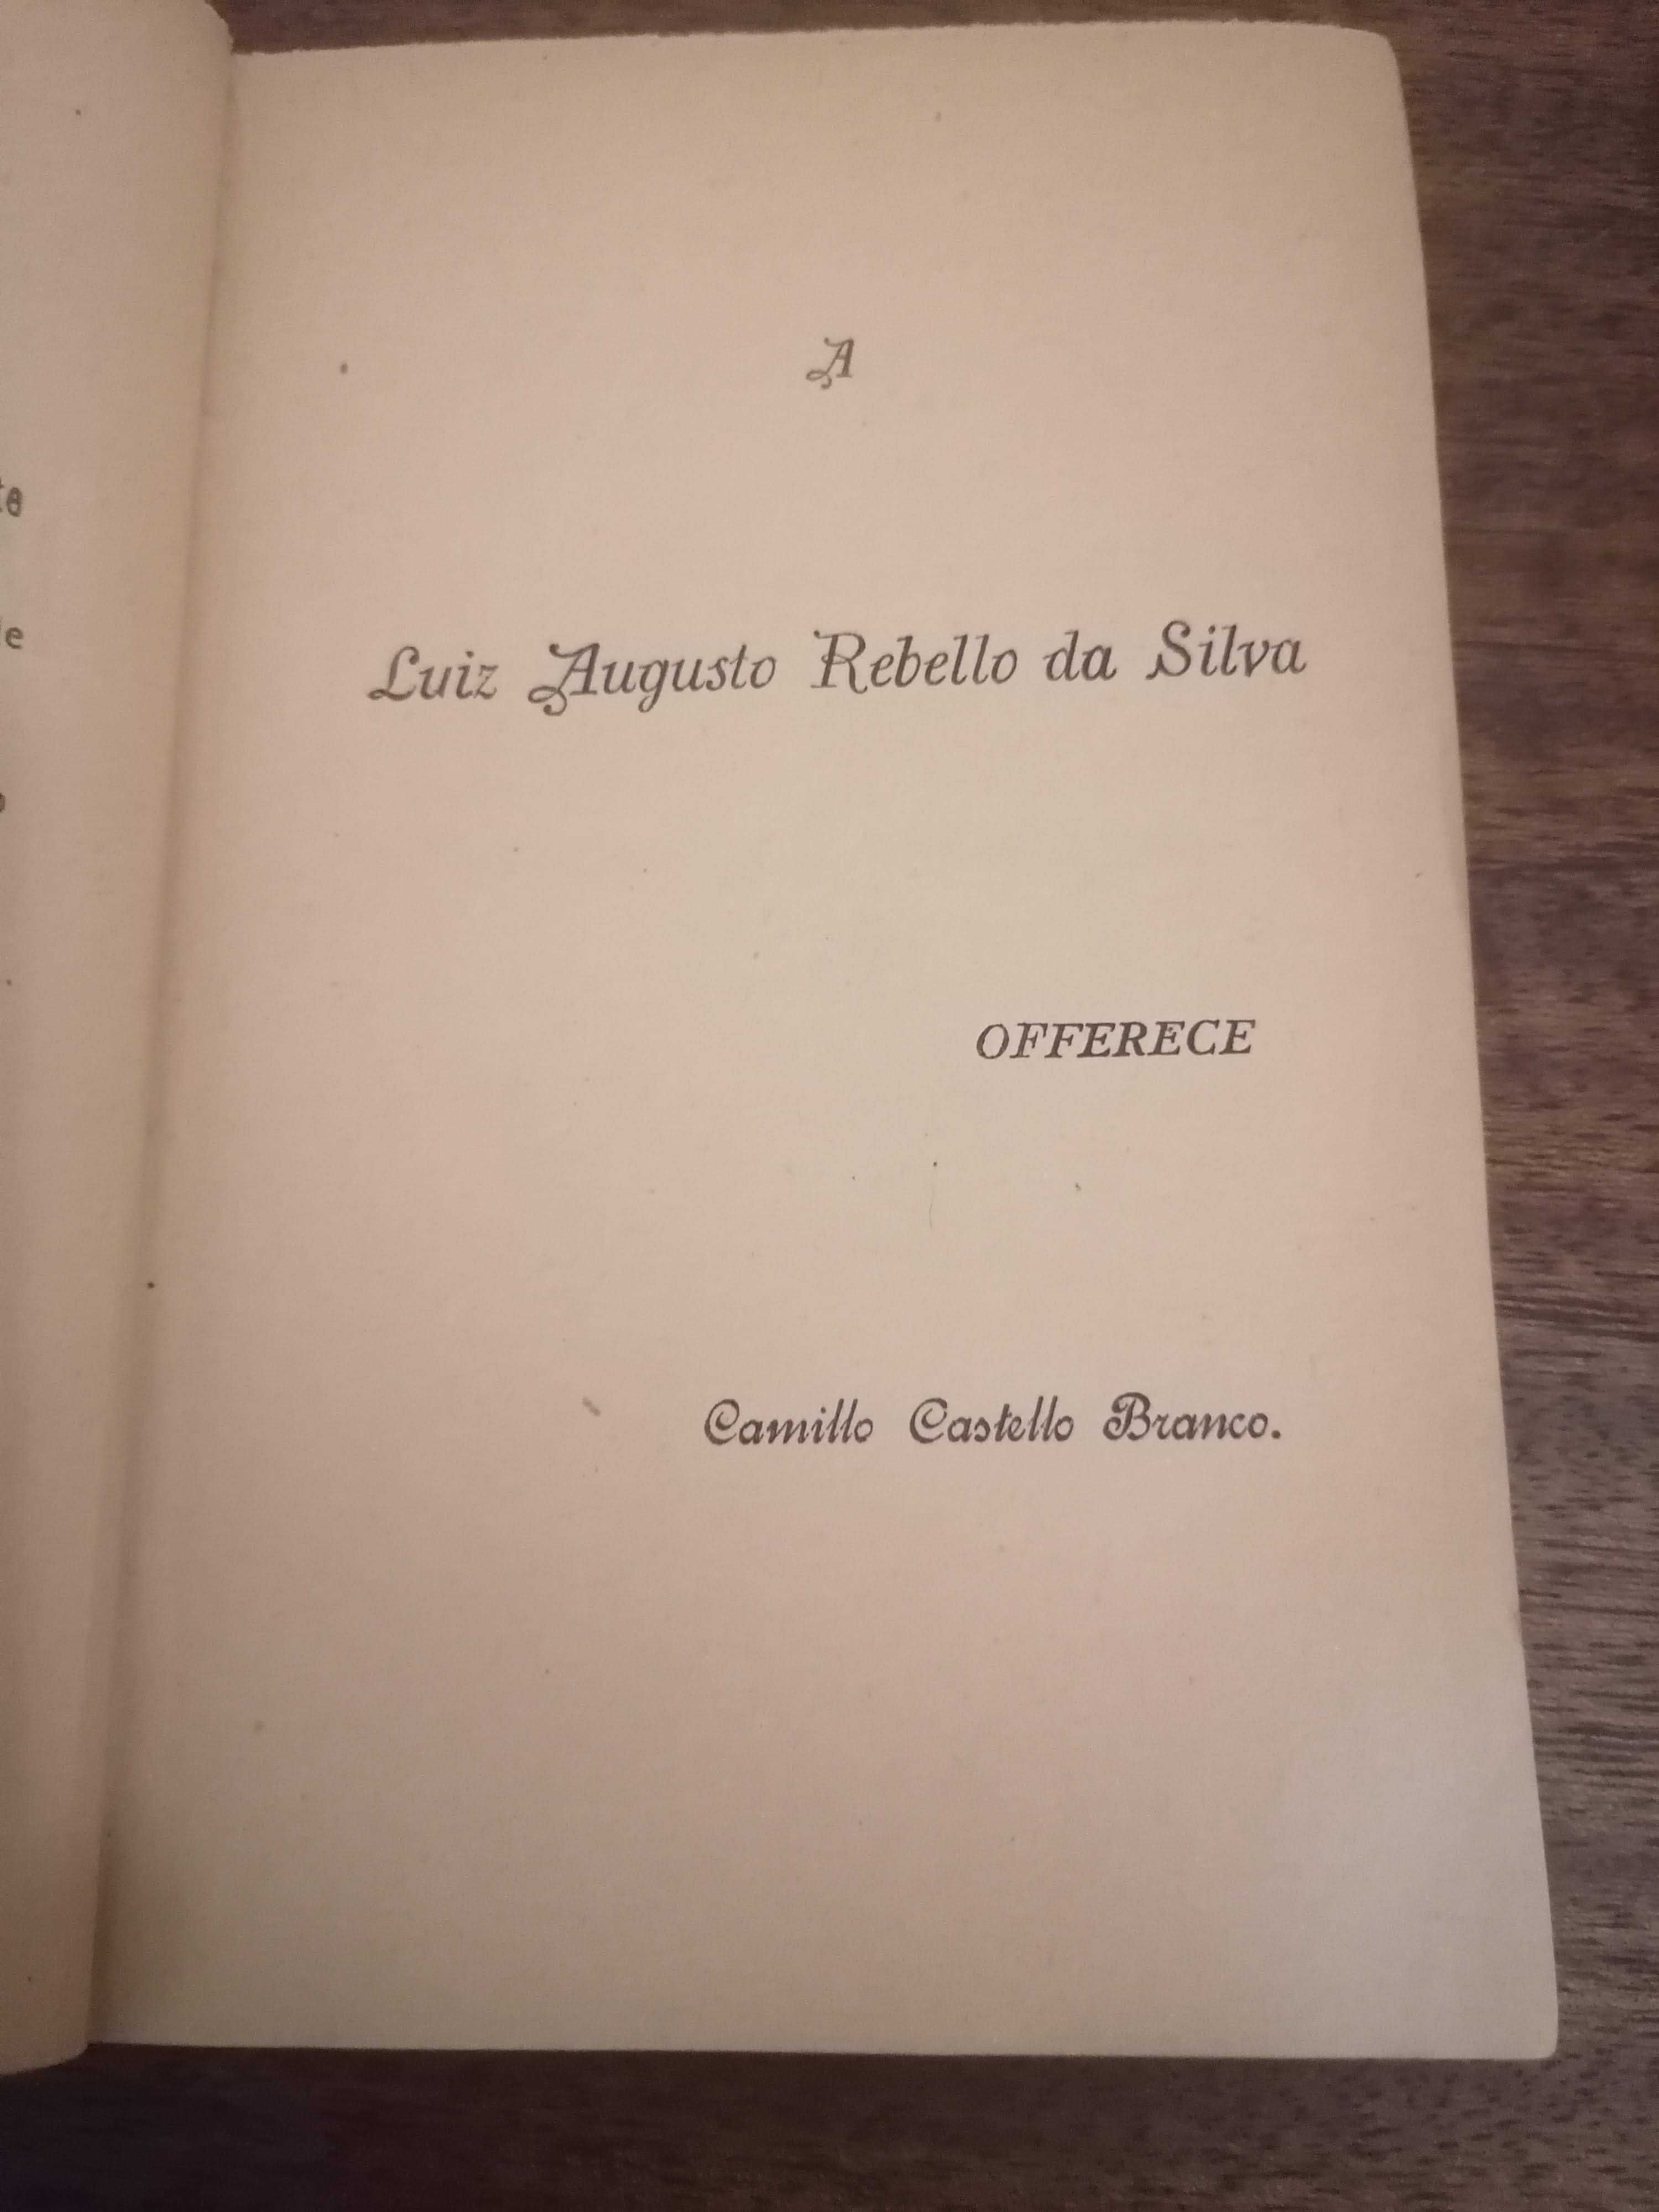 Livro “A Bruxa de Monte-Córdova” de Camilo Castelo Branco